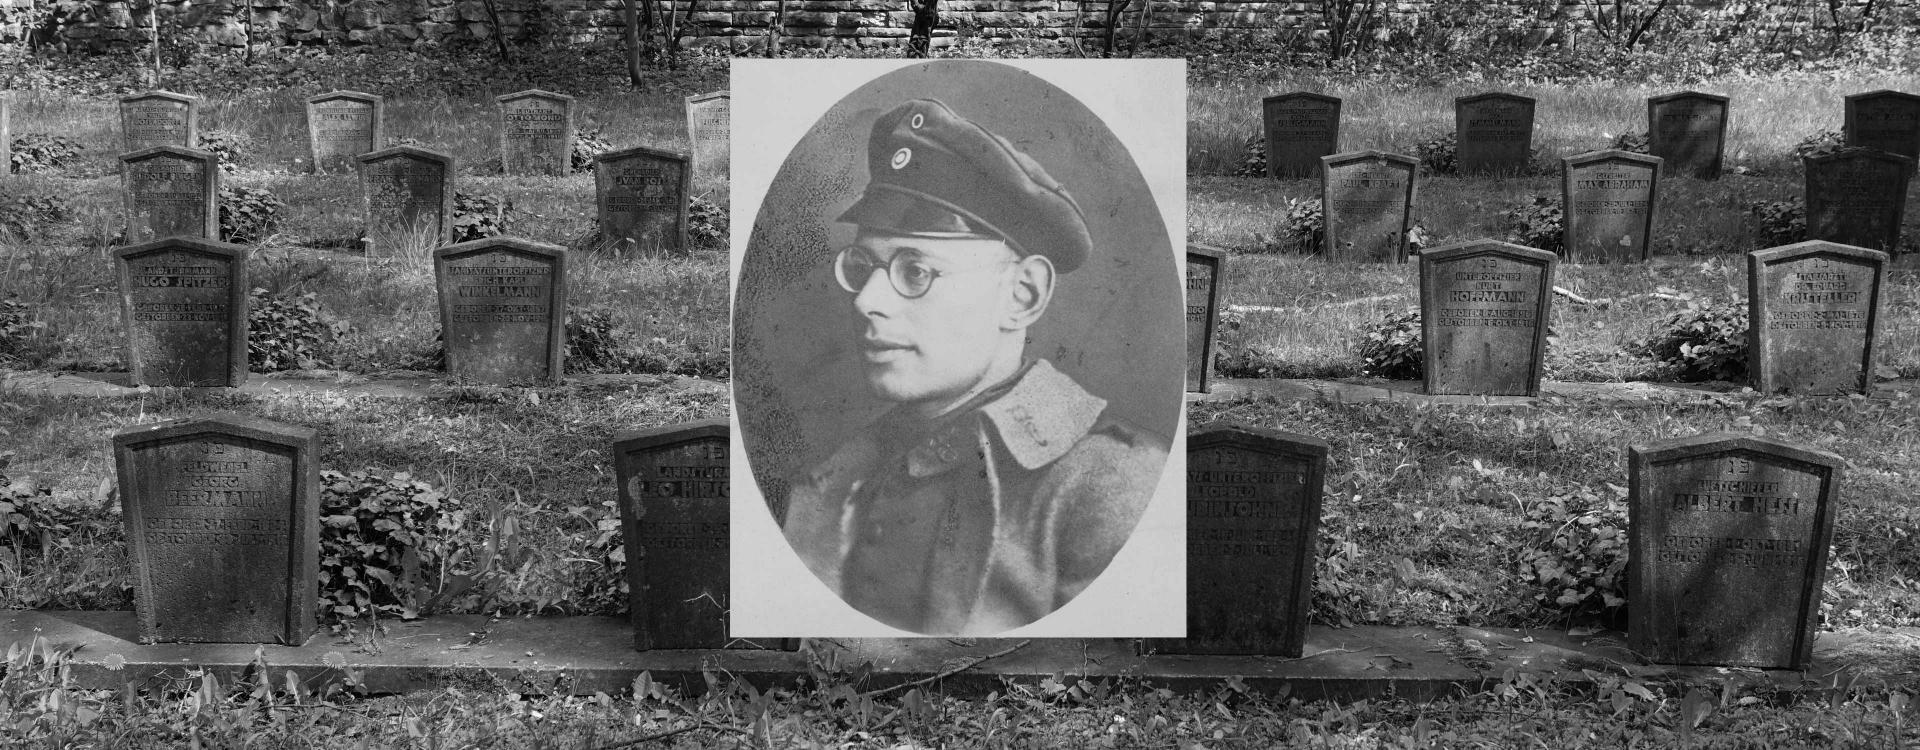 Grabsteine auf einem Friedhof, darüber das Porträt eines Mannes.